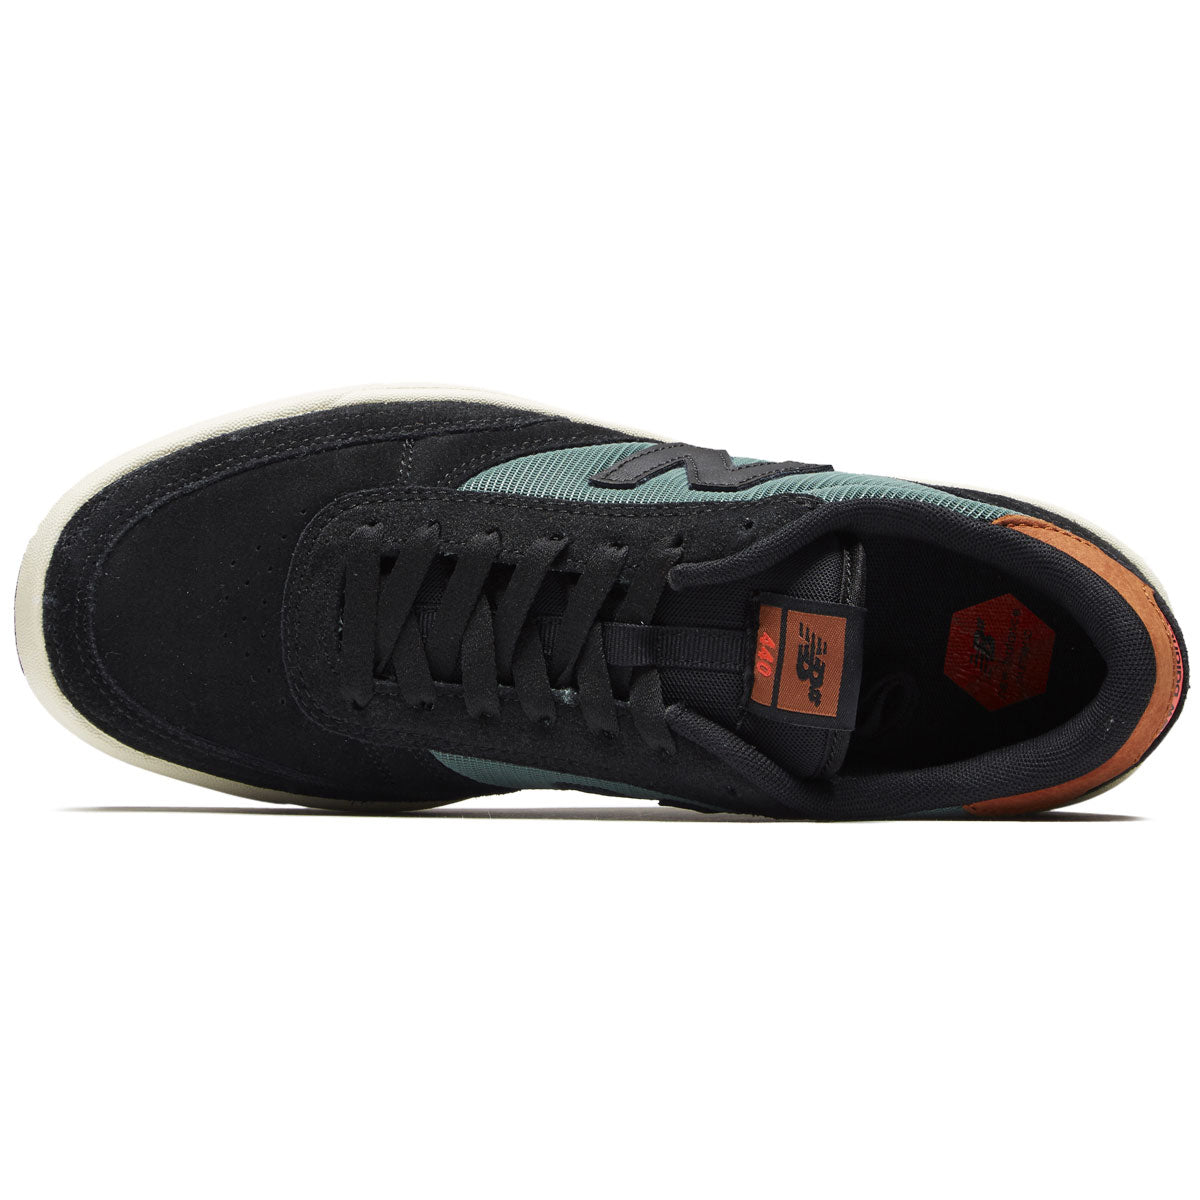 New Balance 440 Shoes - Black/Olive image 3